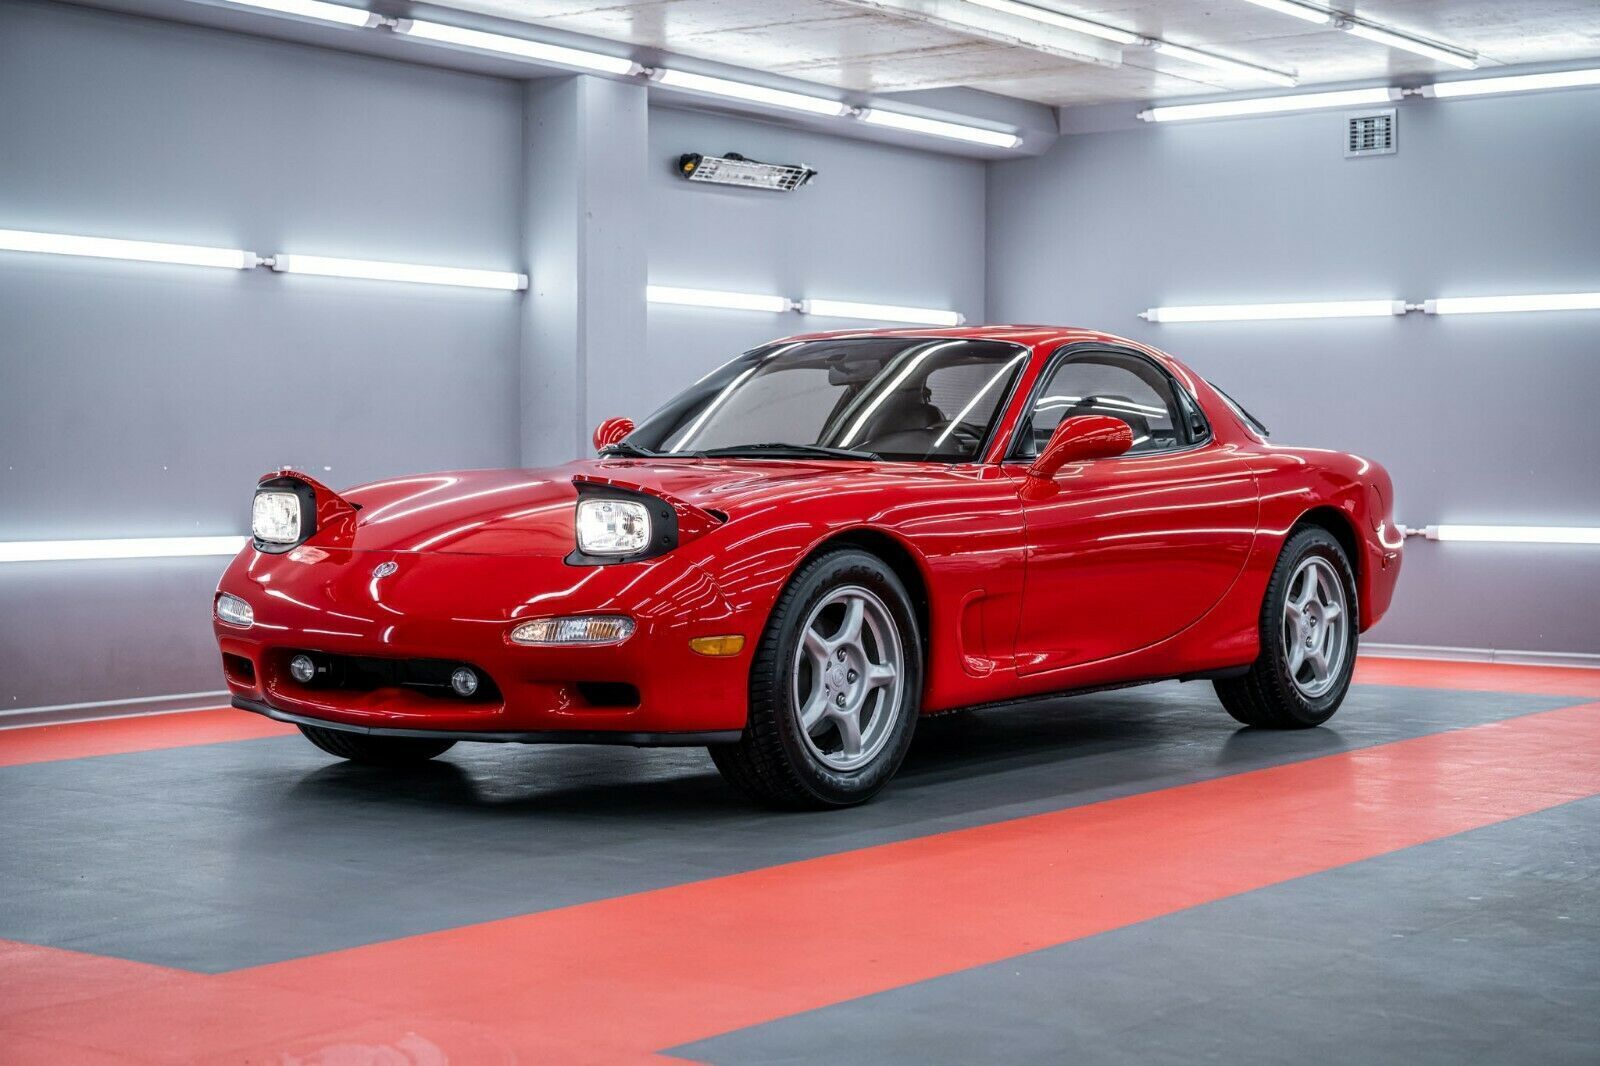 Роторний спорткар Mazda RX-7 був виготовлений 30 років тому, але досі в ідеальному стані.